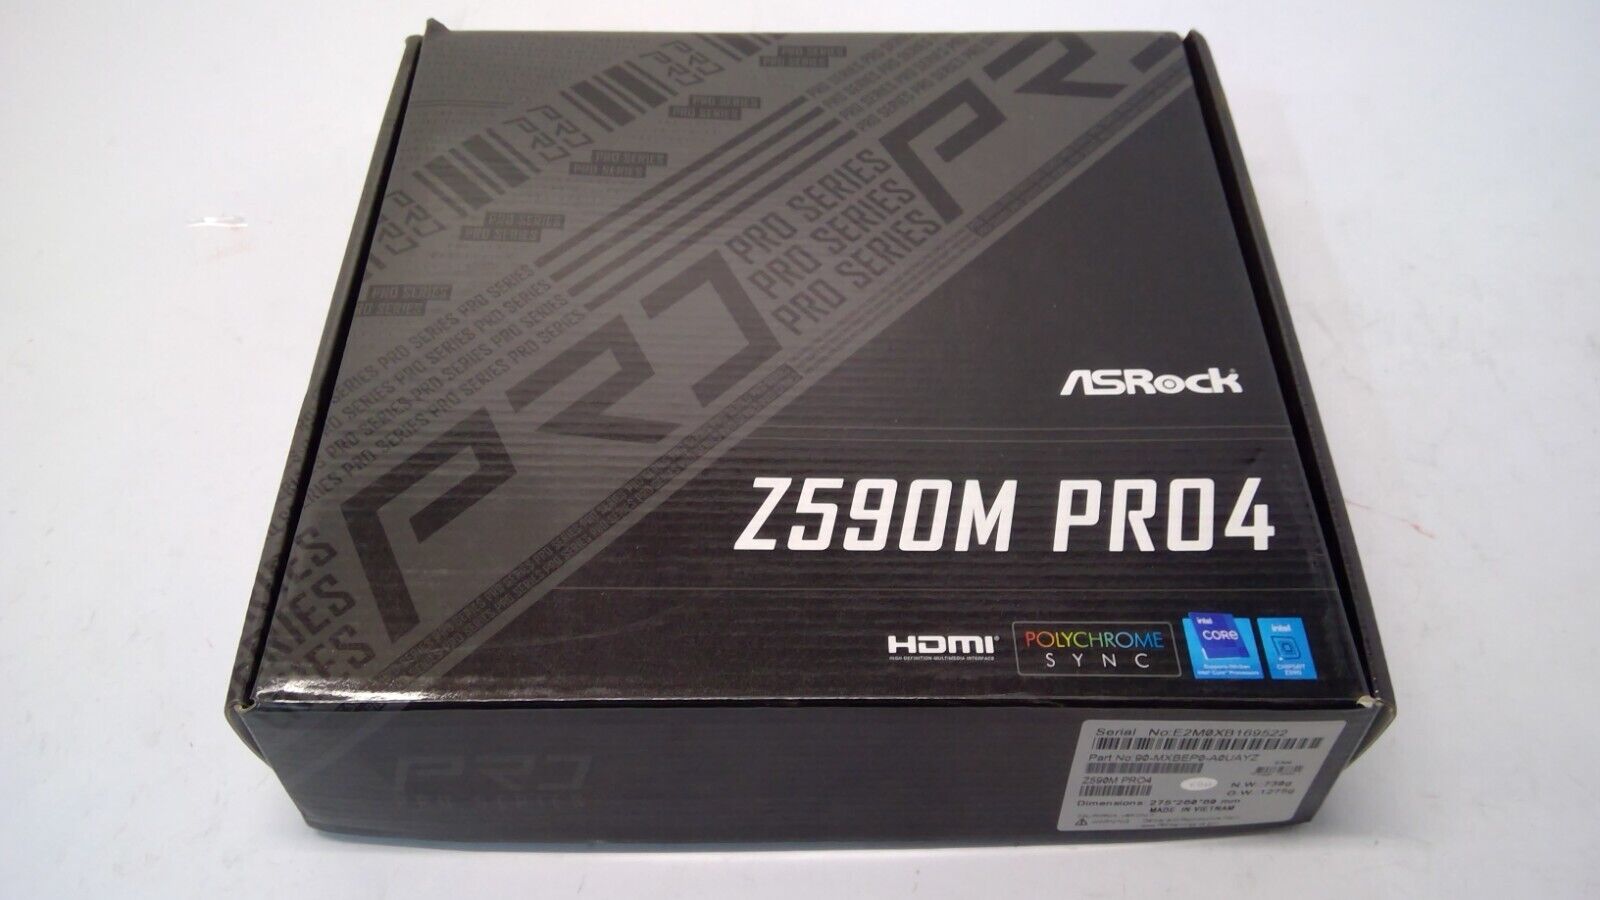 ASRock Z590M PRO4 LGA 1200 Intel Z590 SATA 6Gb/s Micro ATX Intel Motherboard